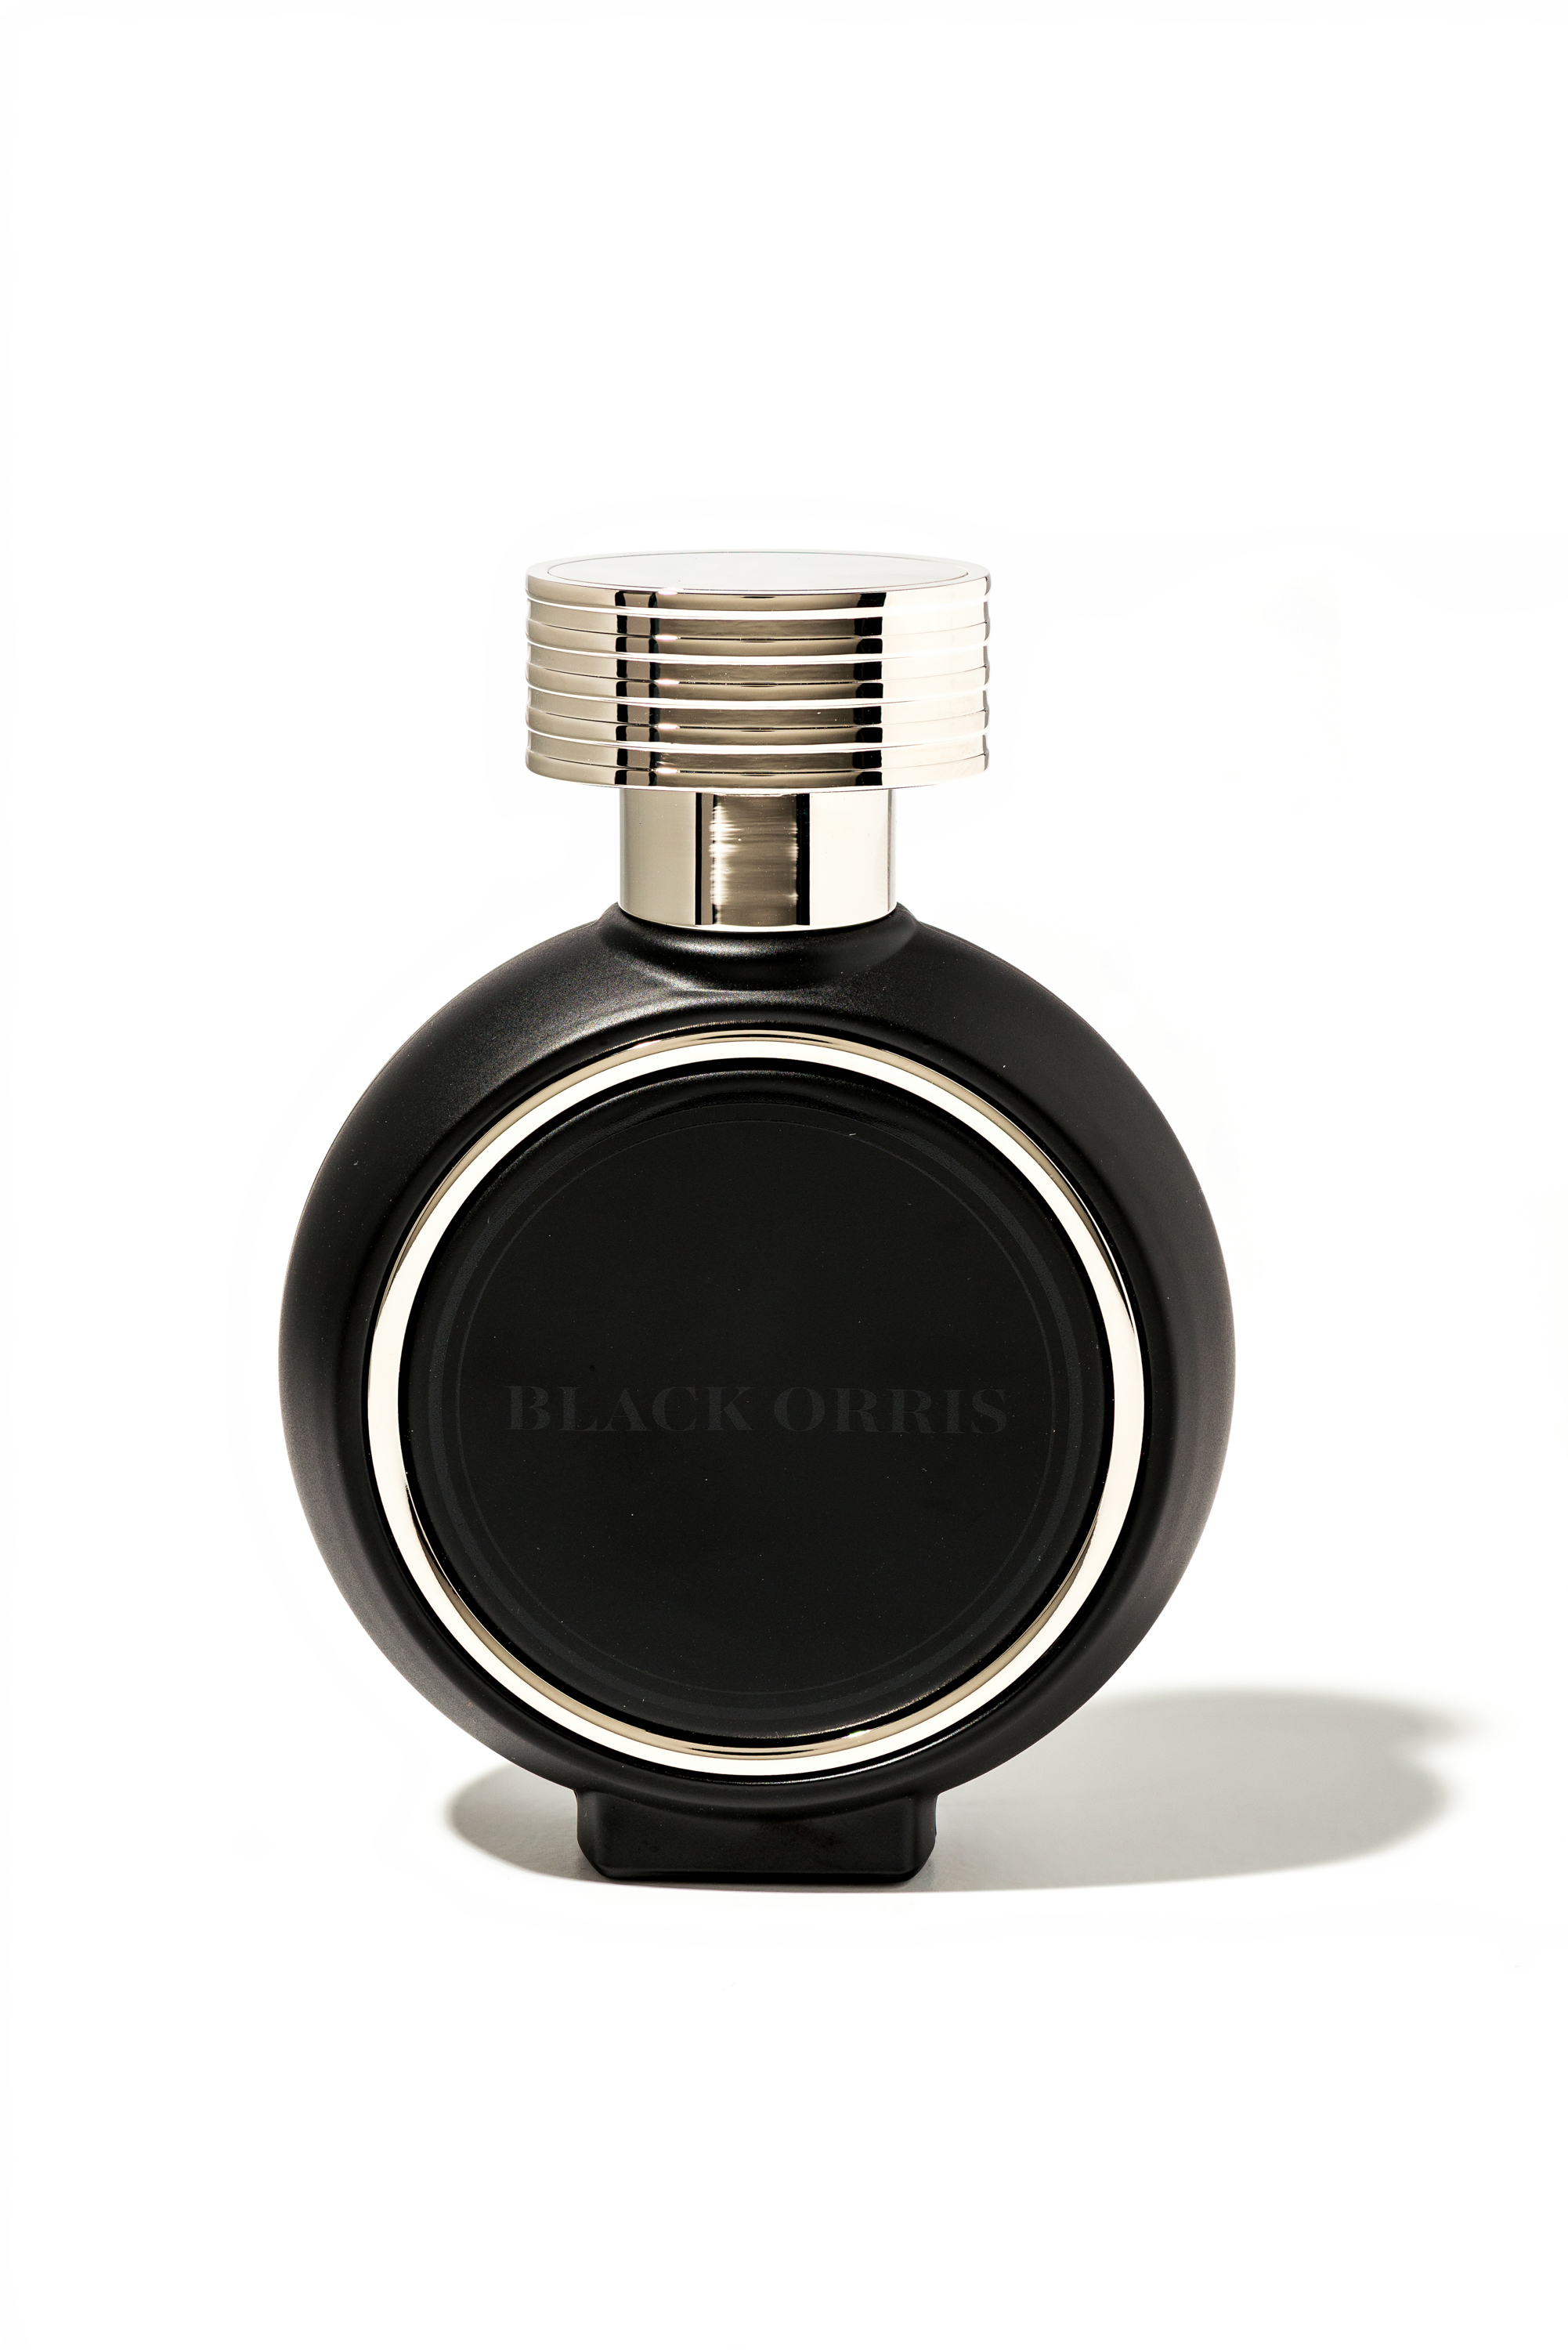 HFC Paris - Black Orris - Eau de Parfum